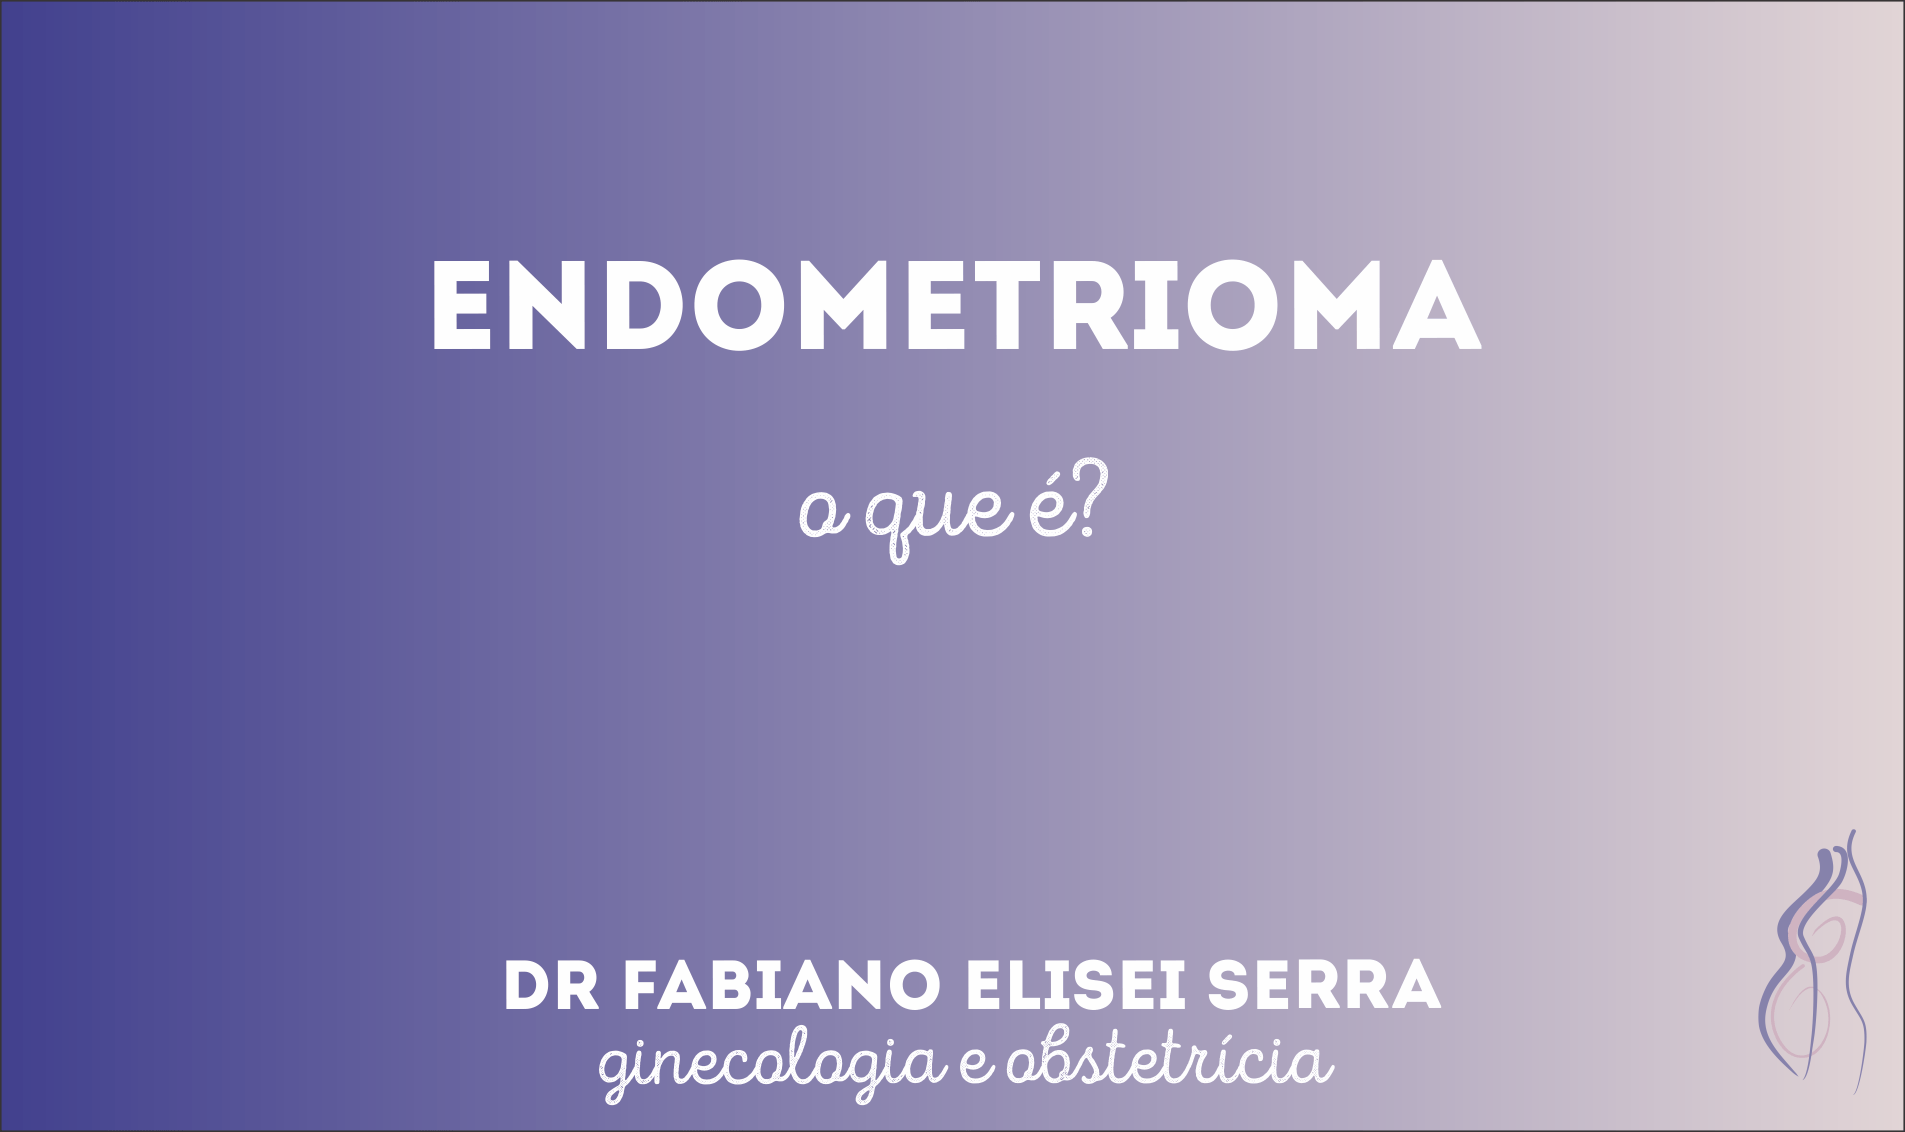 O que é endometrioma?